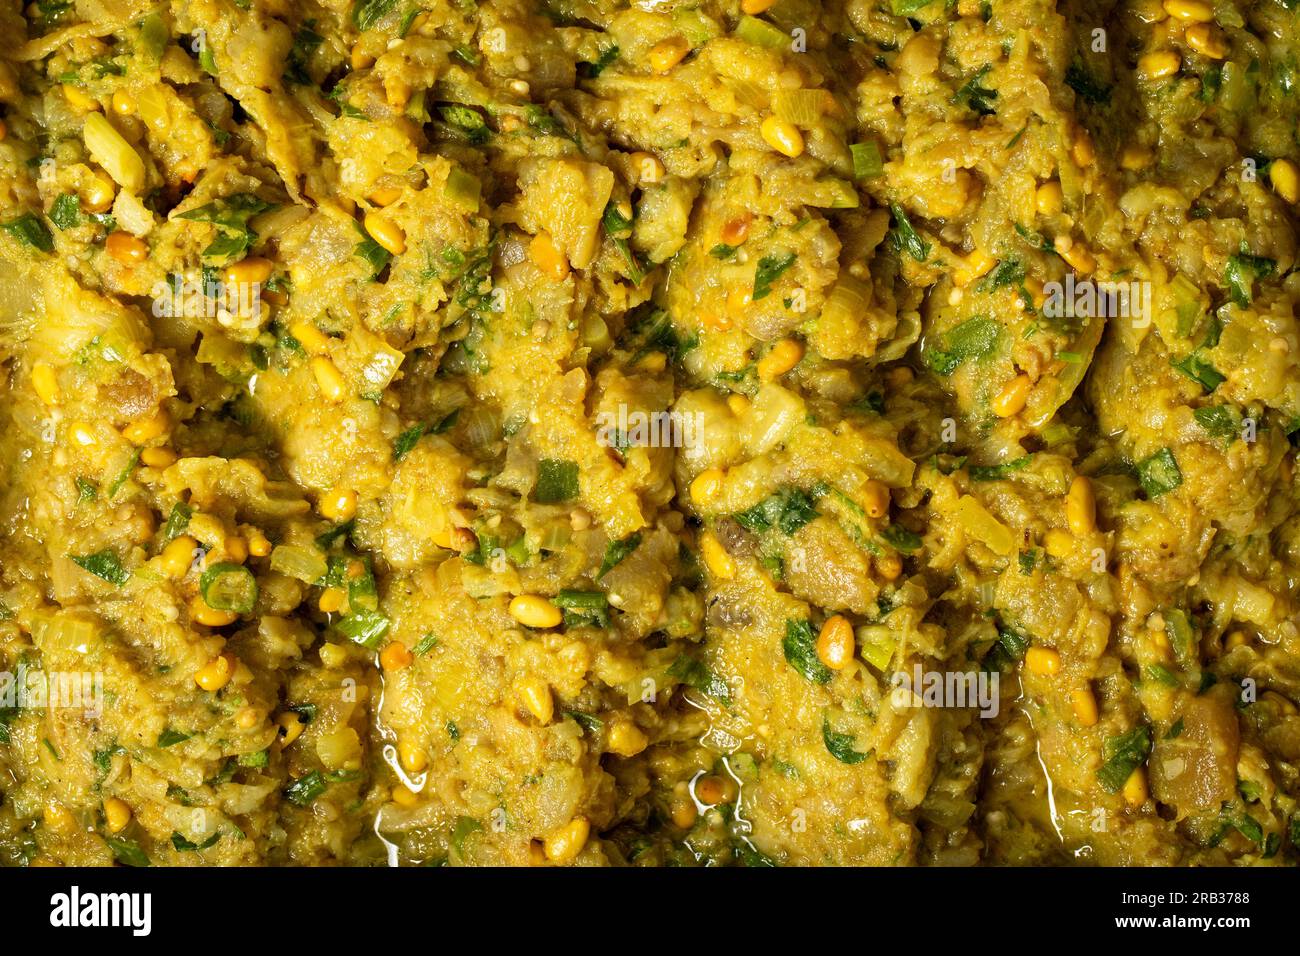 Sicilyano. Vorspeise mit Olivenöl, Curry, Pistazien und Auberginen. Gesunde Vorspeisen. Lebensmittelhintergrund Stockfoto